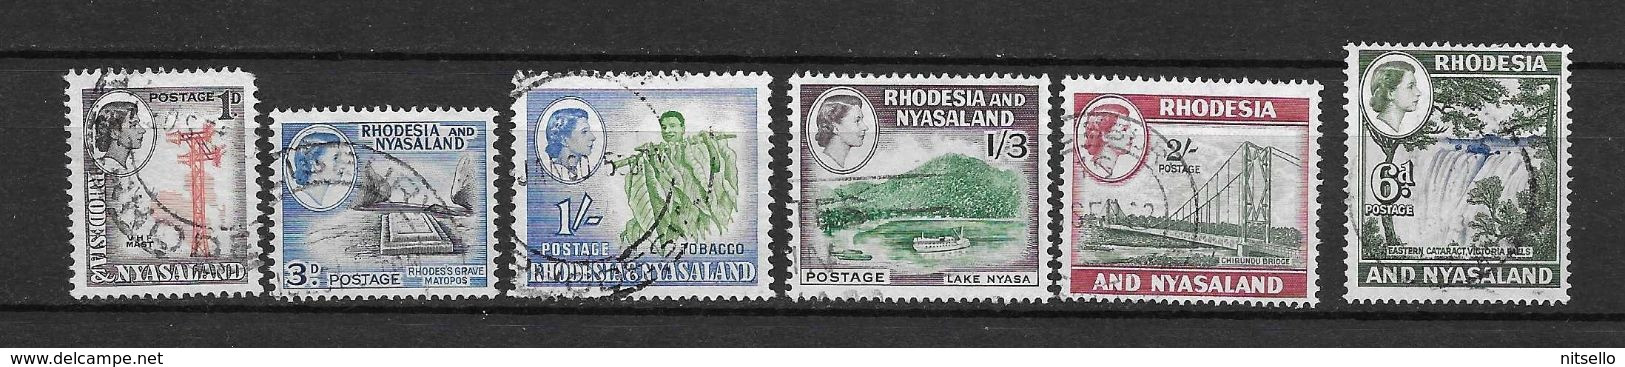 LOTE 2219A  ///   (C012)  RODESIA & NYASALAND          ¡¡¡¡¡ LIQUIDATION!!!!! - Rodesia & Nyasaland (1954-1963)